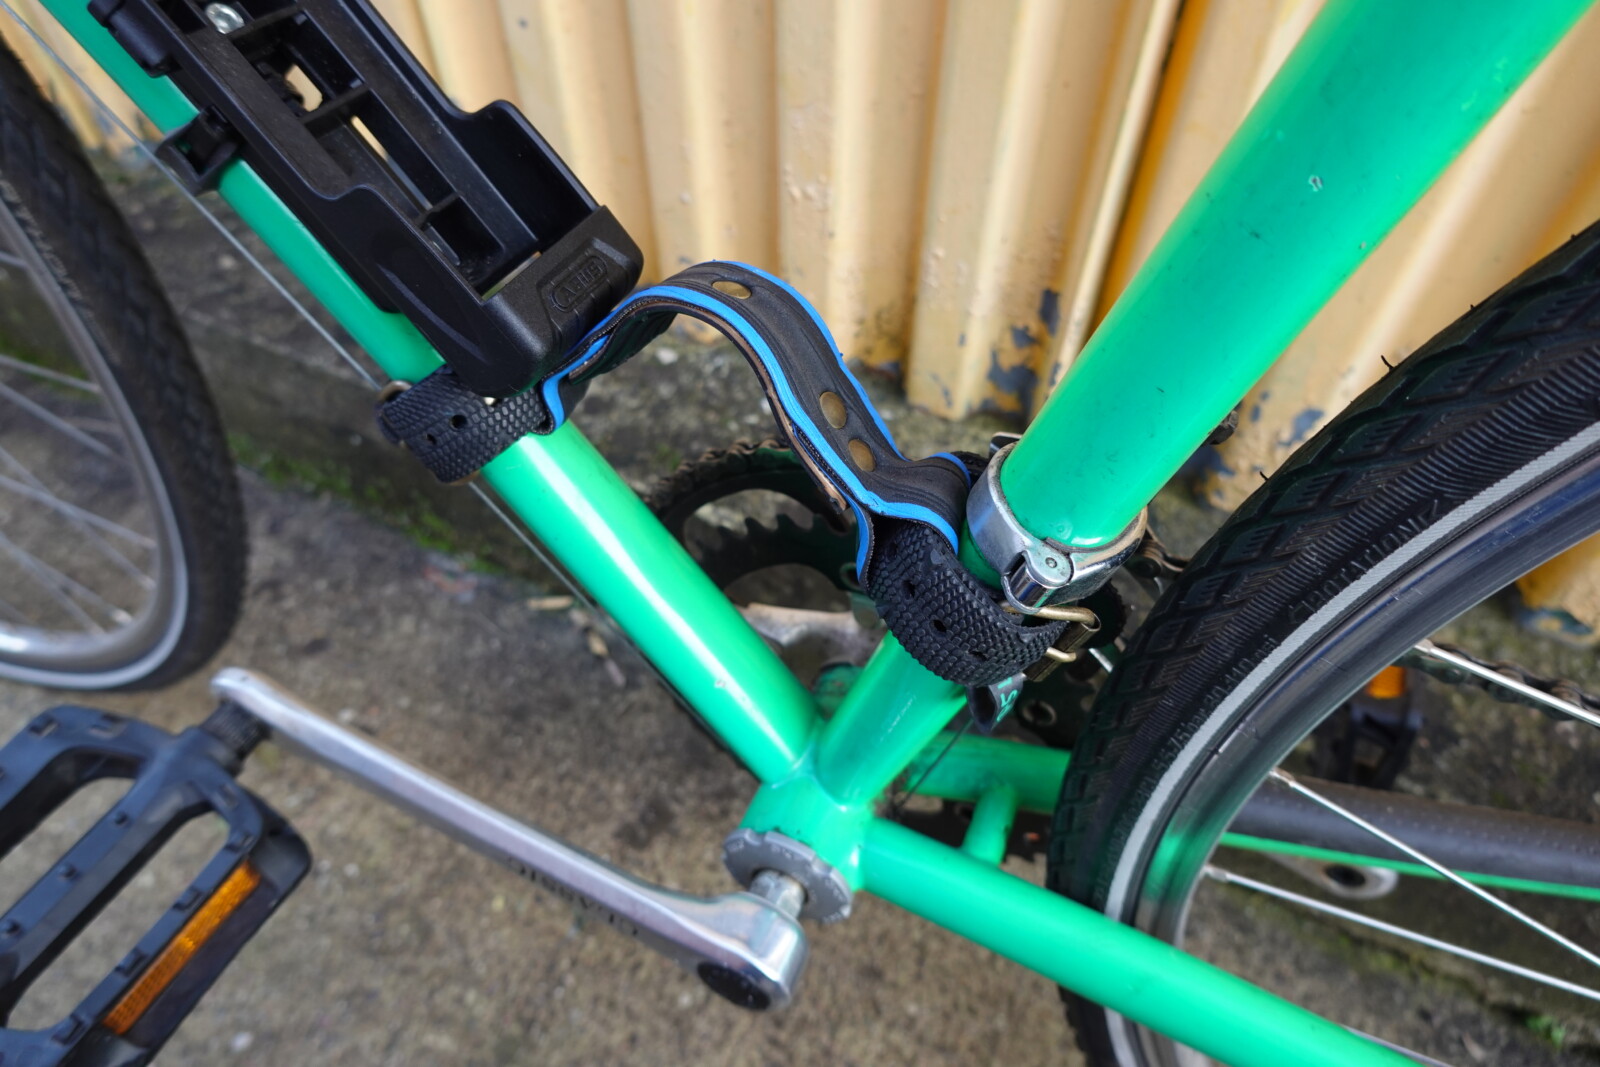 Poignées de transport pour vélo en pneu